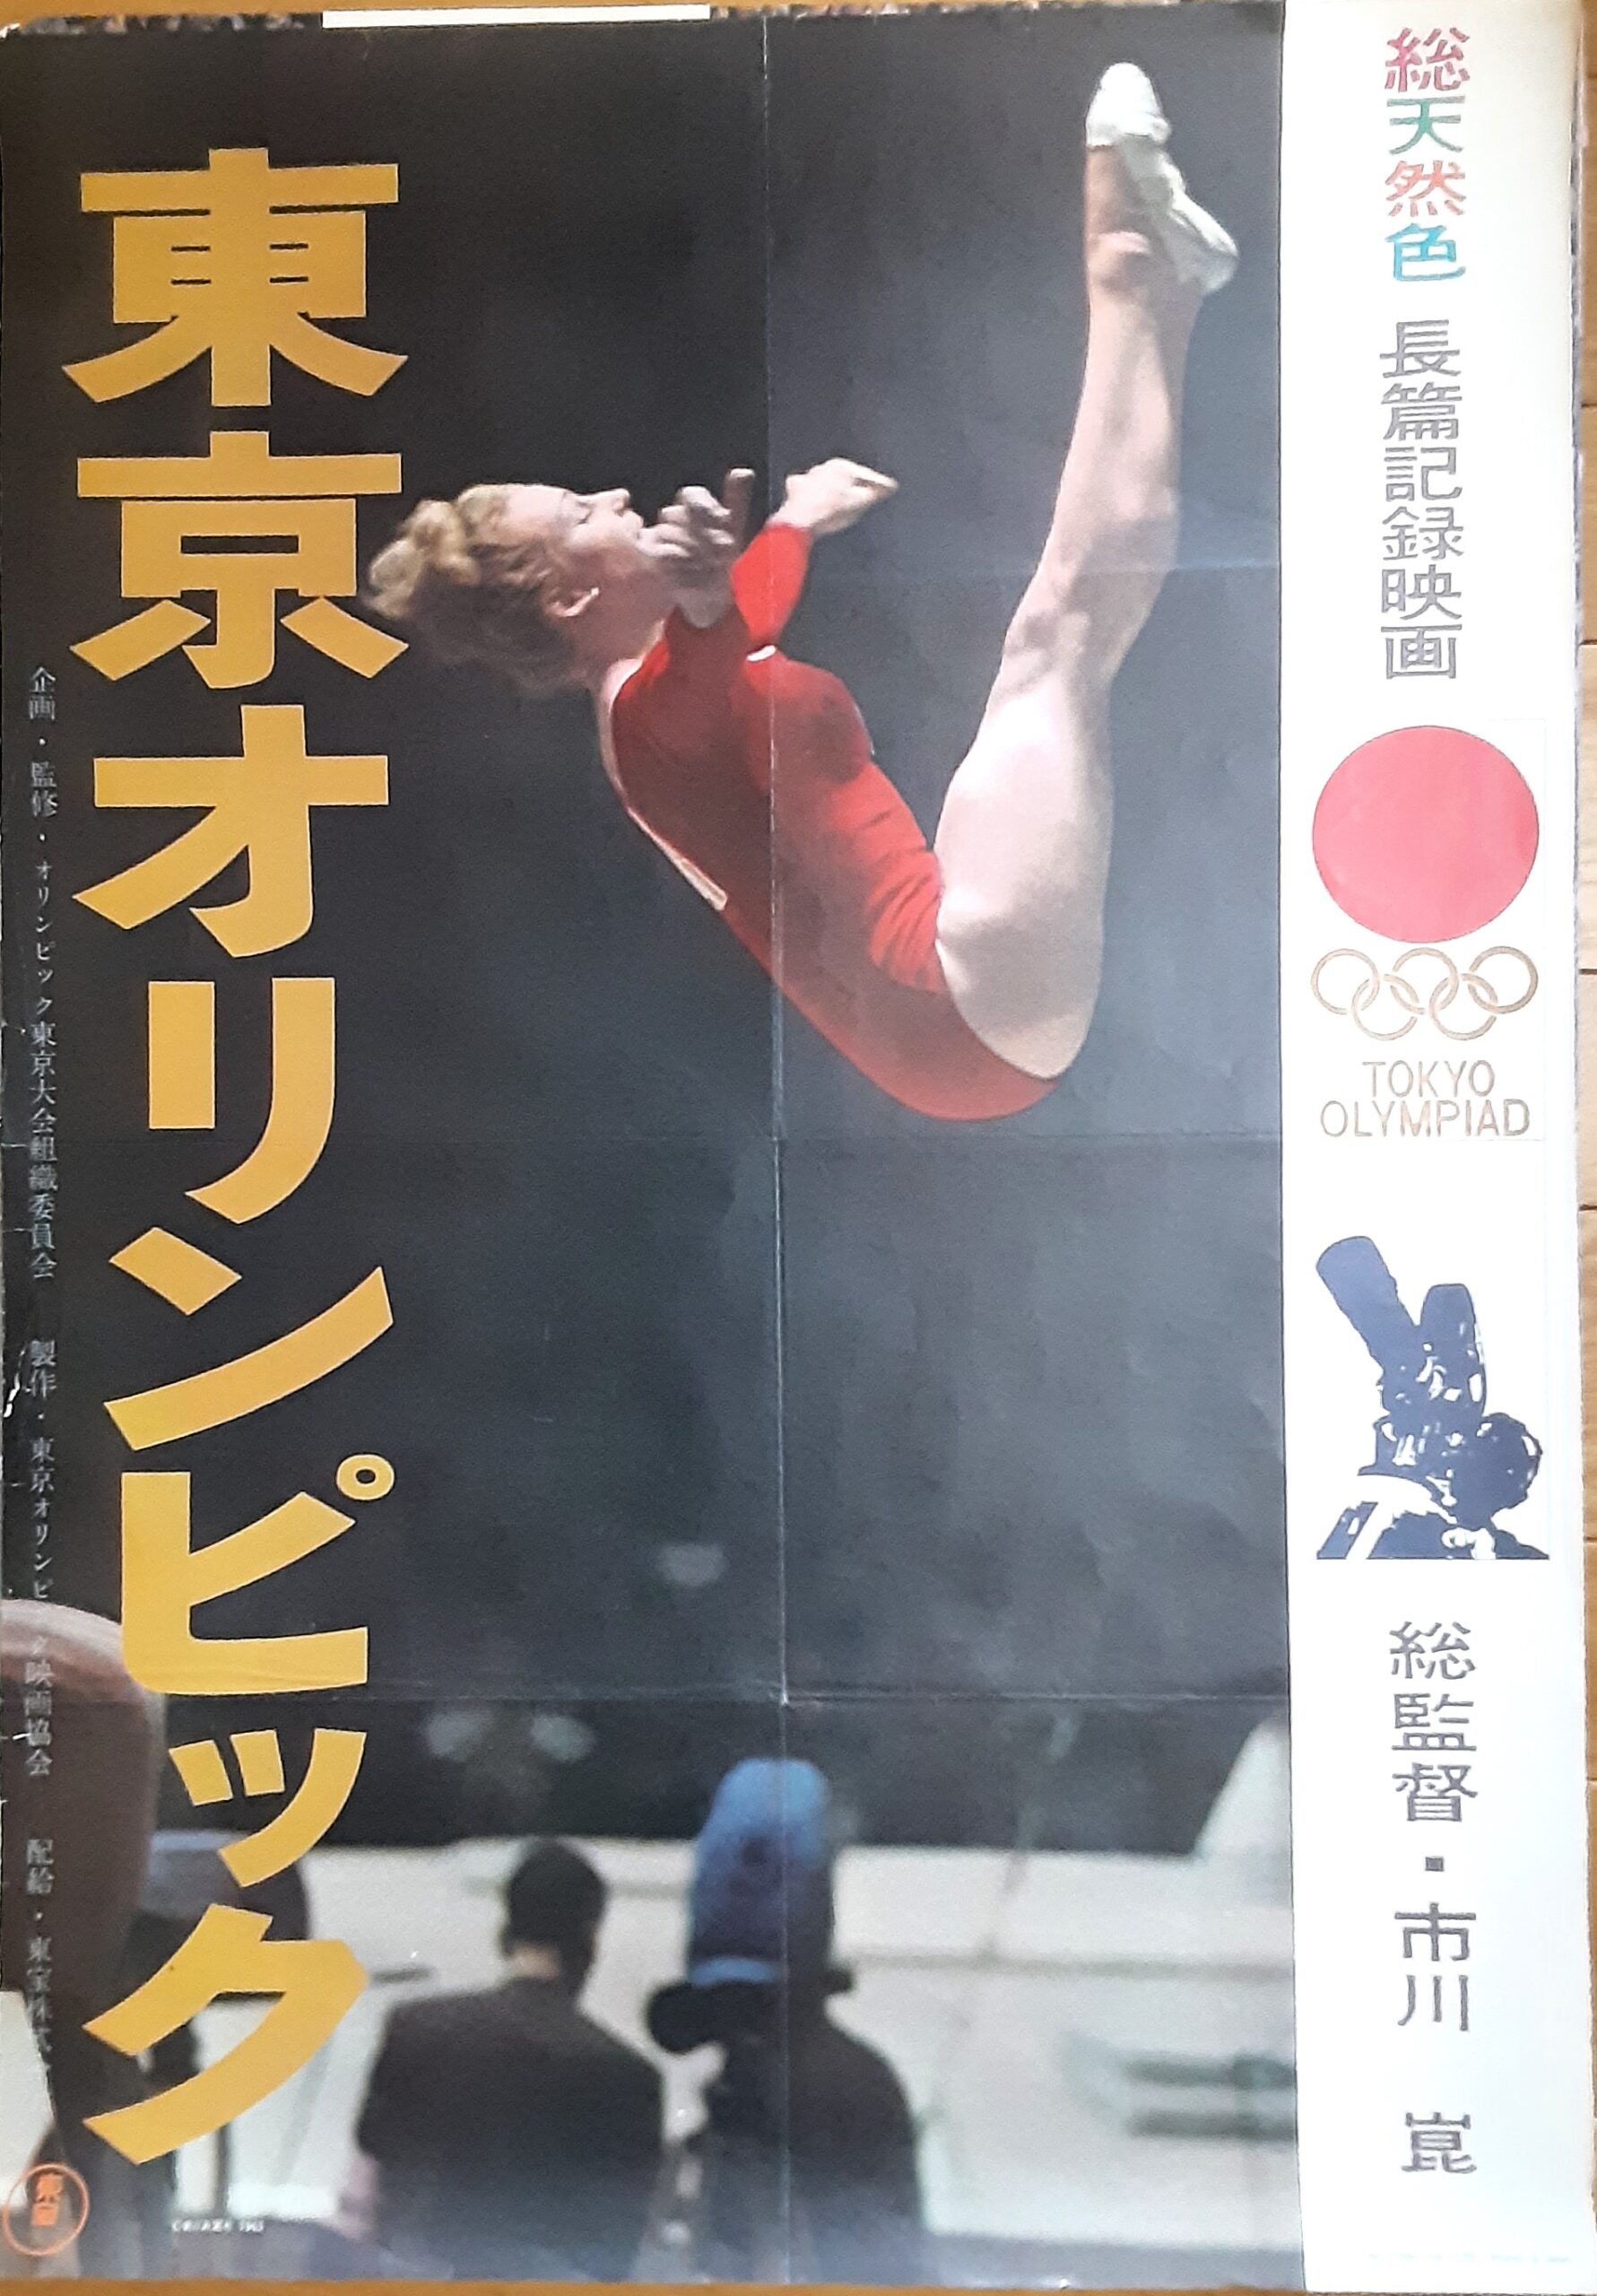 東京オリンピック1964 – 映画コレクション・しねとろ倶楽部